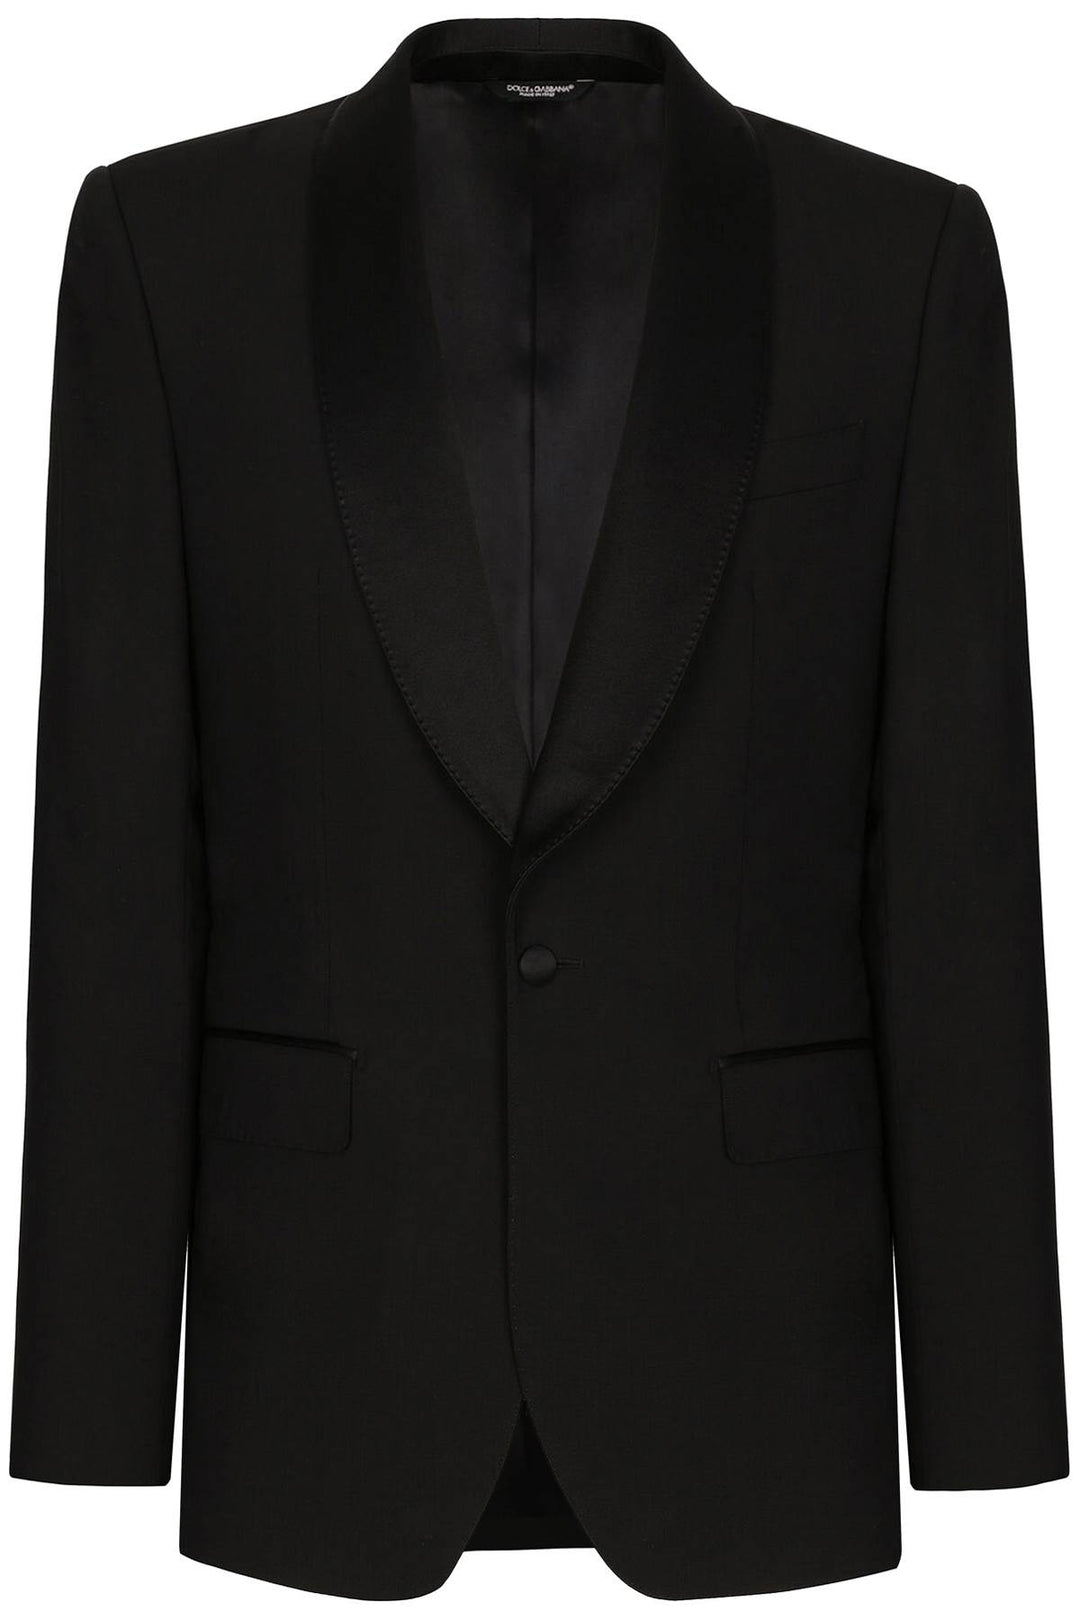 Dolce & Gabbana 'Sicilia' Tuxedo Jacket   Nero